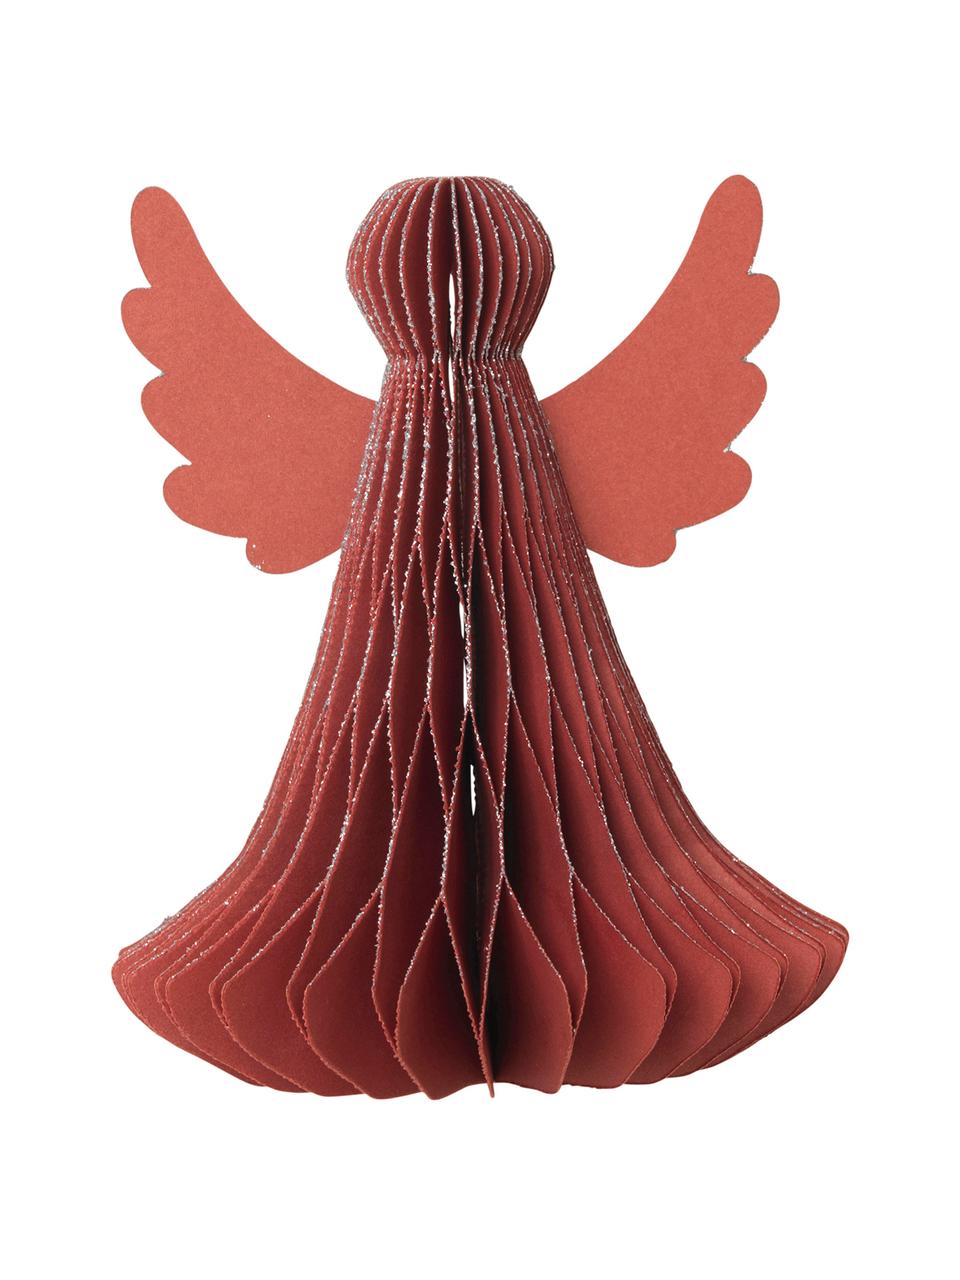 Deko-Objekte Angel in Rot, 2 Stück, Papier, Rot, Ø 10 x H 13 cm